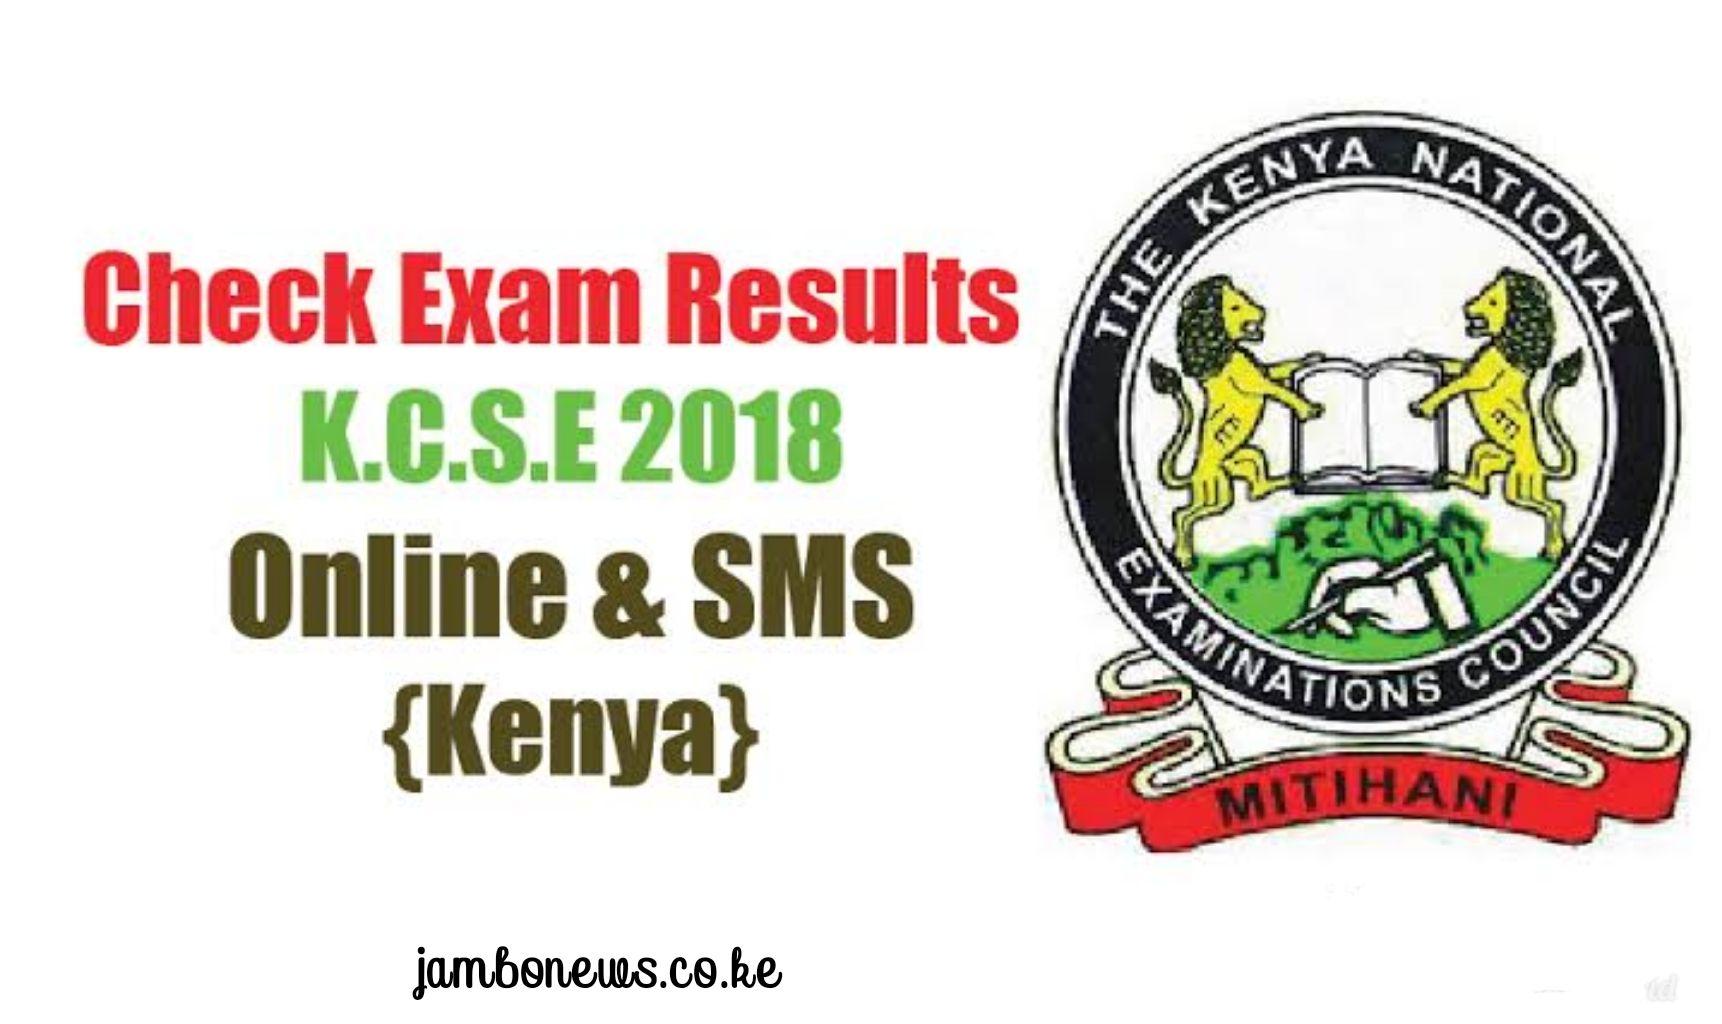 Knec Logo - How To Check Receive KCSE 2018 Results Via KNEC SMS Code KNEC